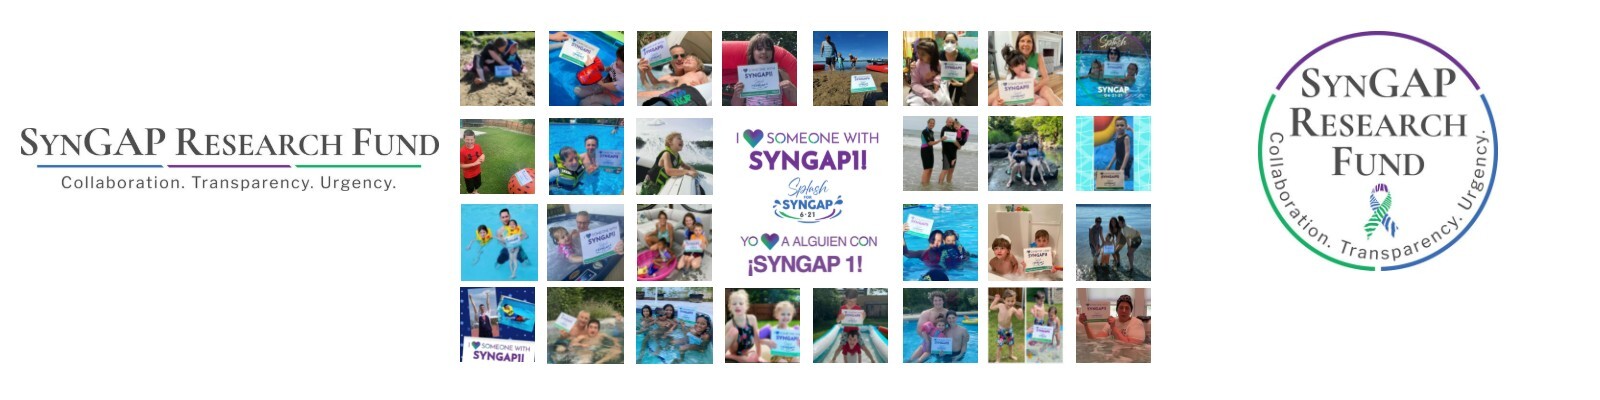 SynGAP10 weekly 10 minute updates on SYNGAP1 (video)